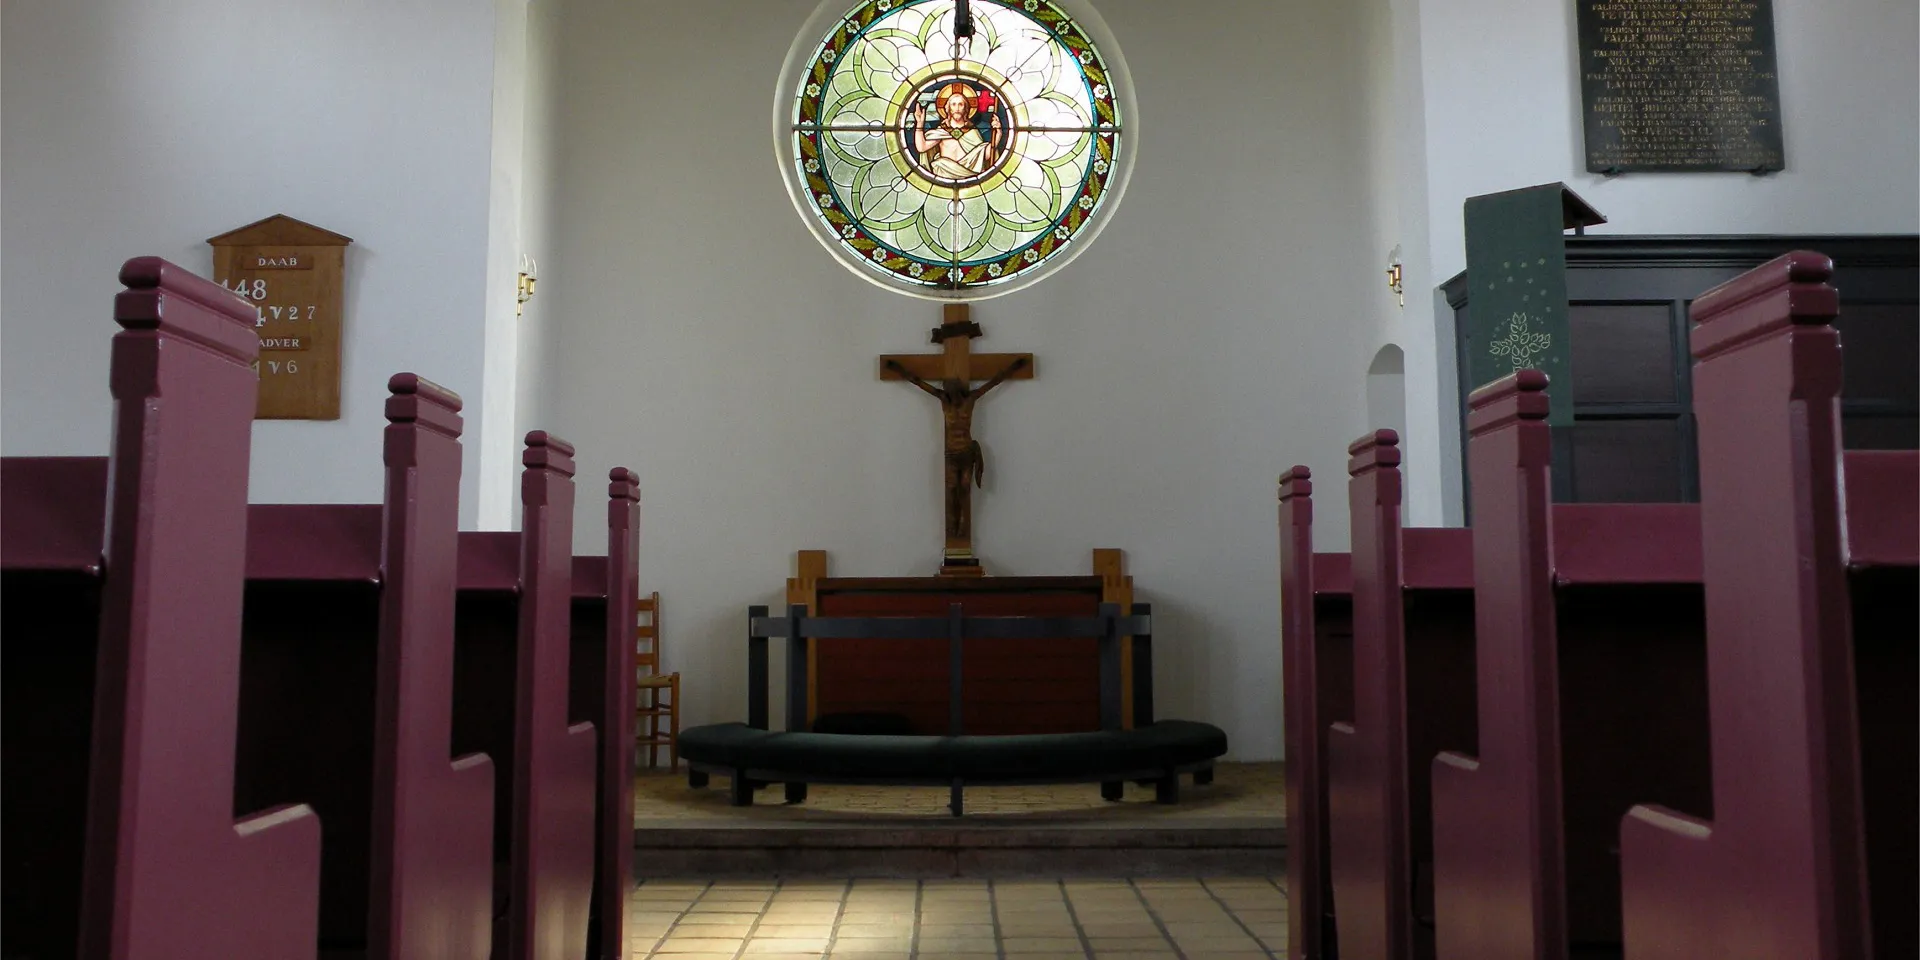 Aarø Kirke